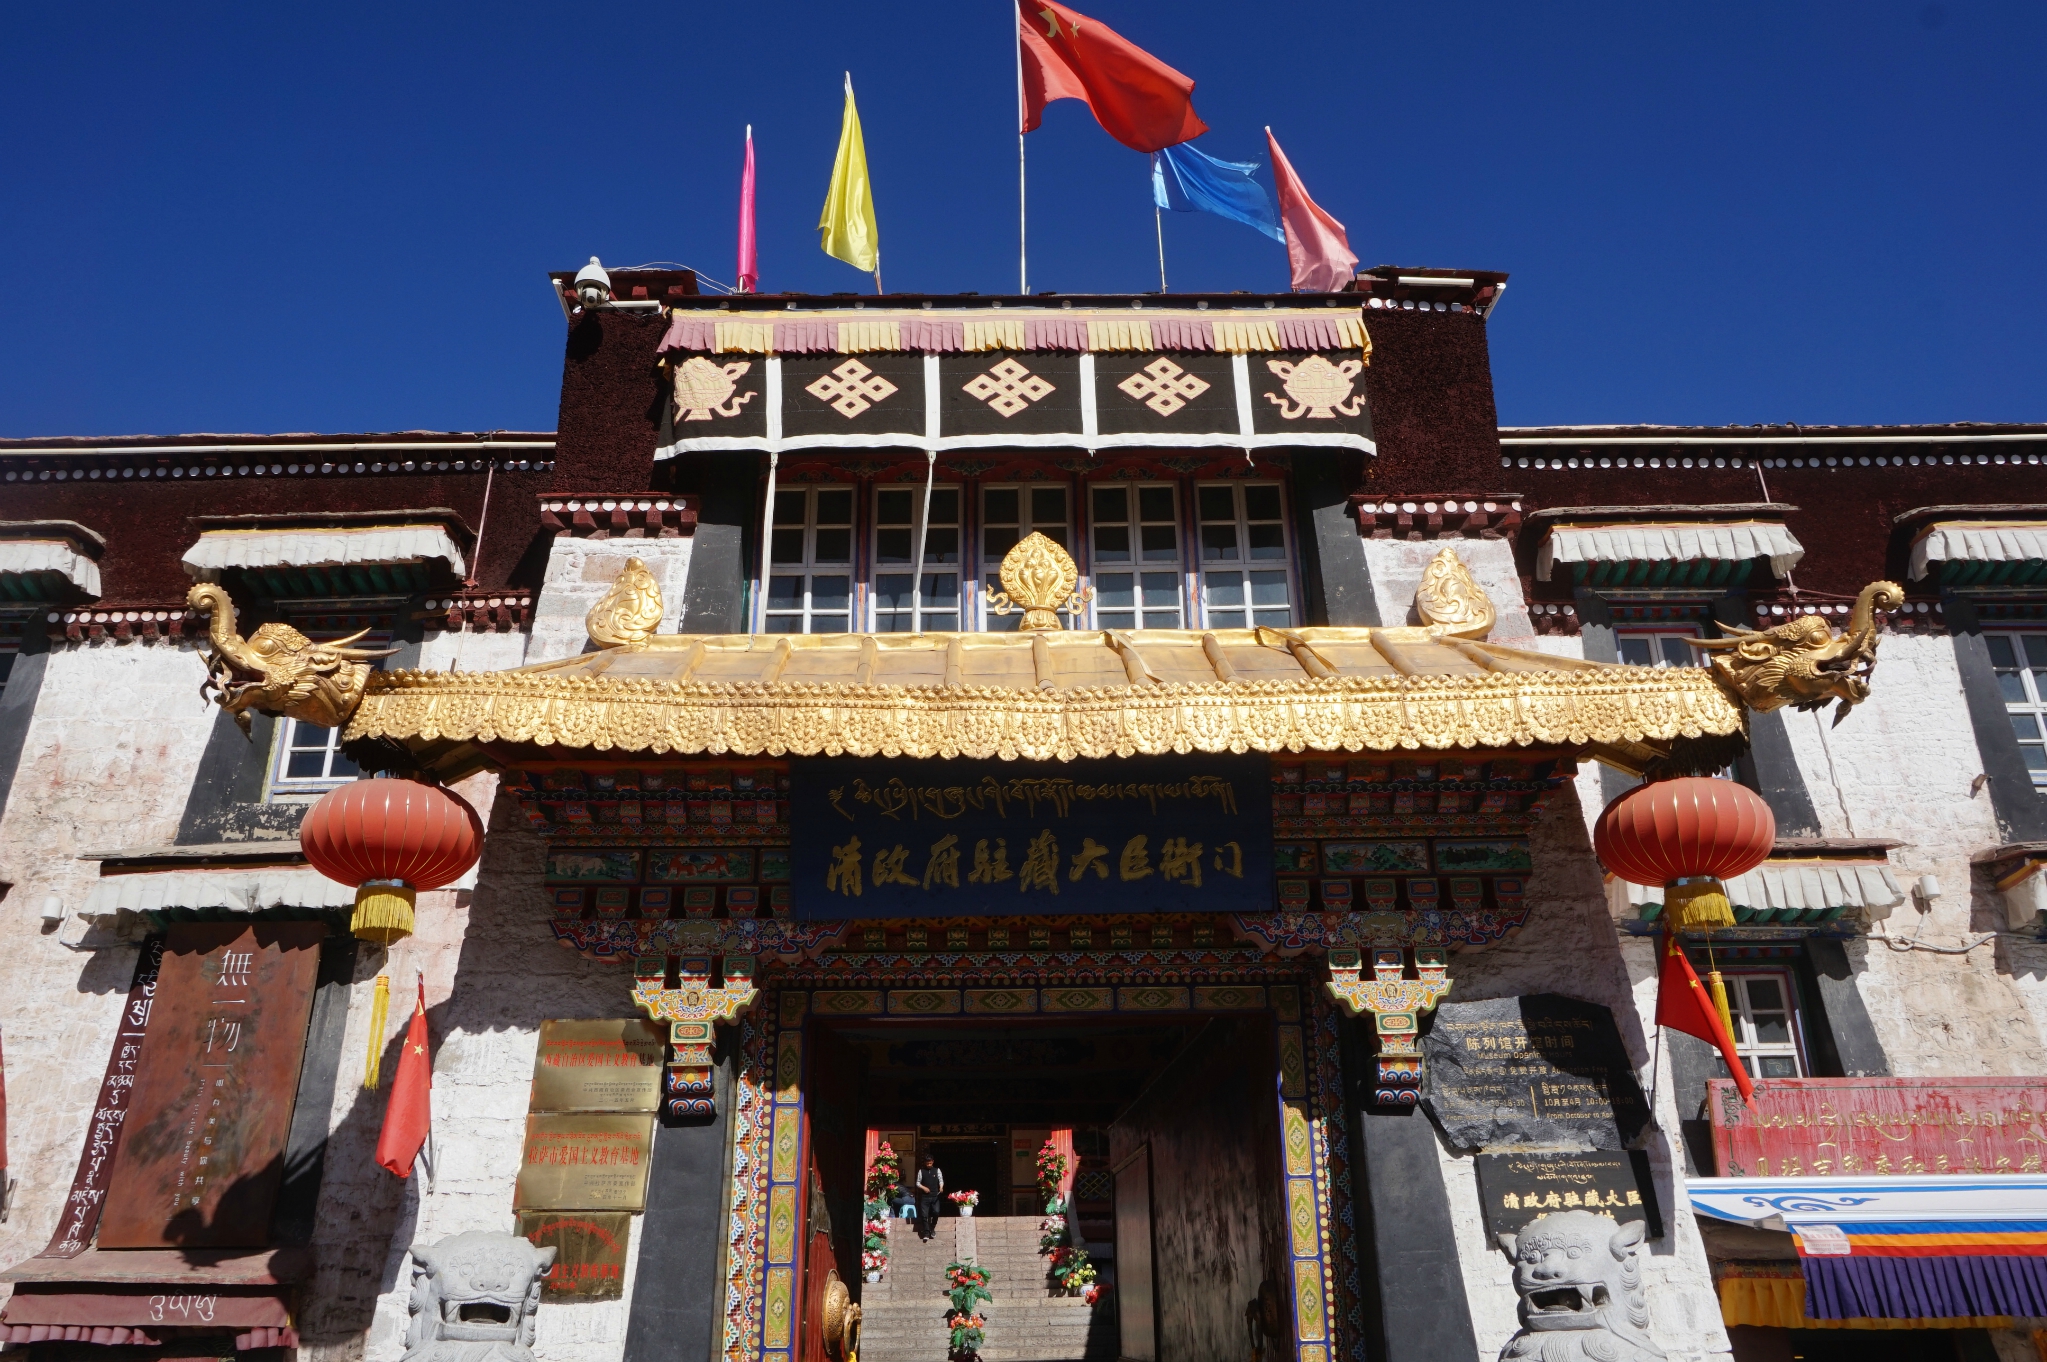 清政府驻藏大臣衙门位于八廓街的东面,面积不大,有兴趣的游客可以